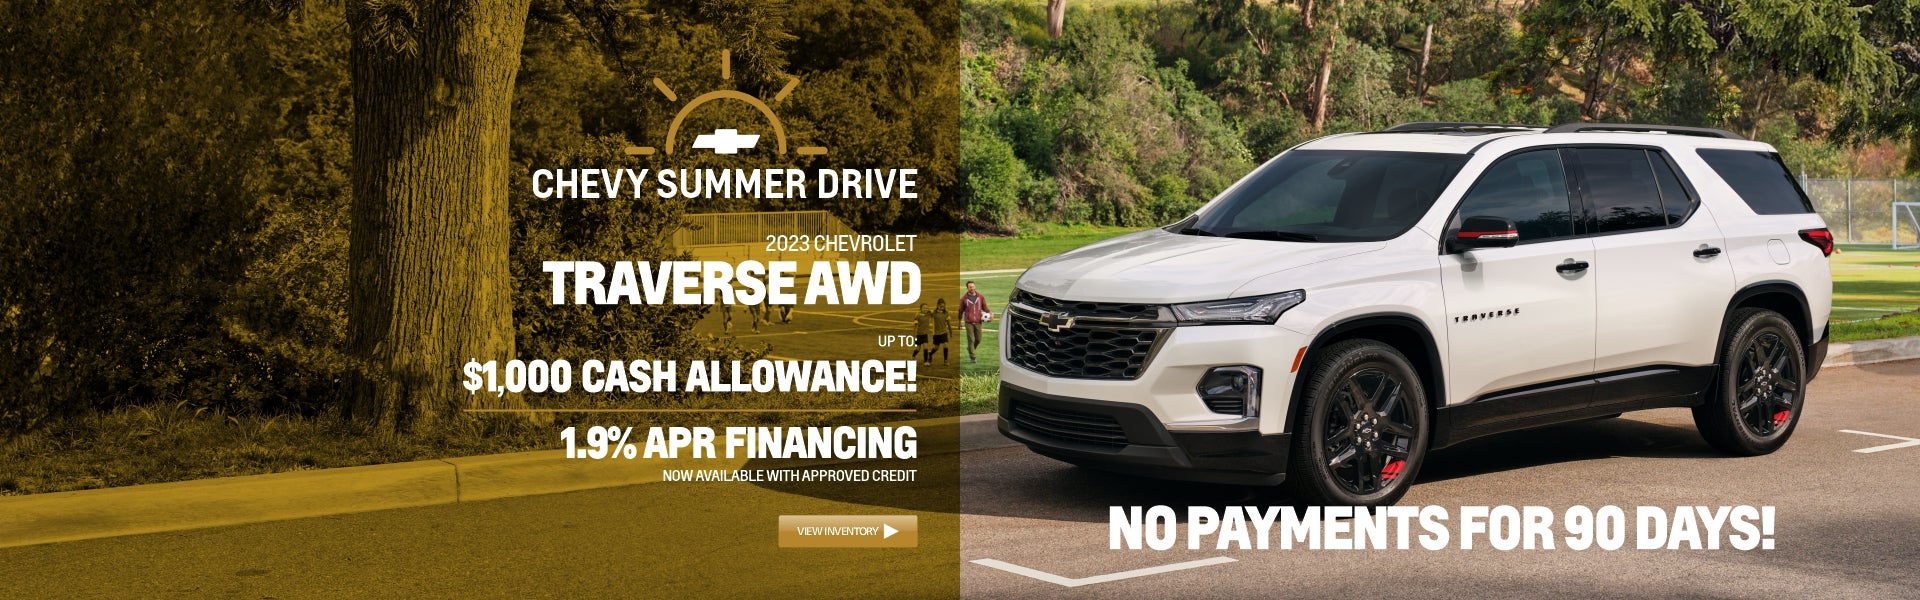 2023 Traverse AWD $1000 Cash Allowence